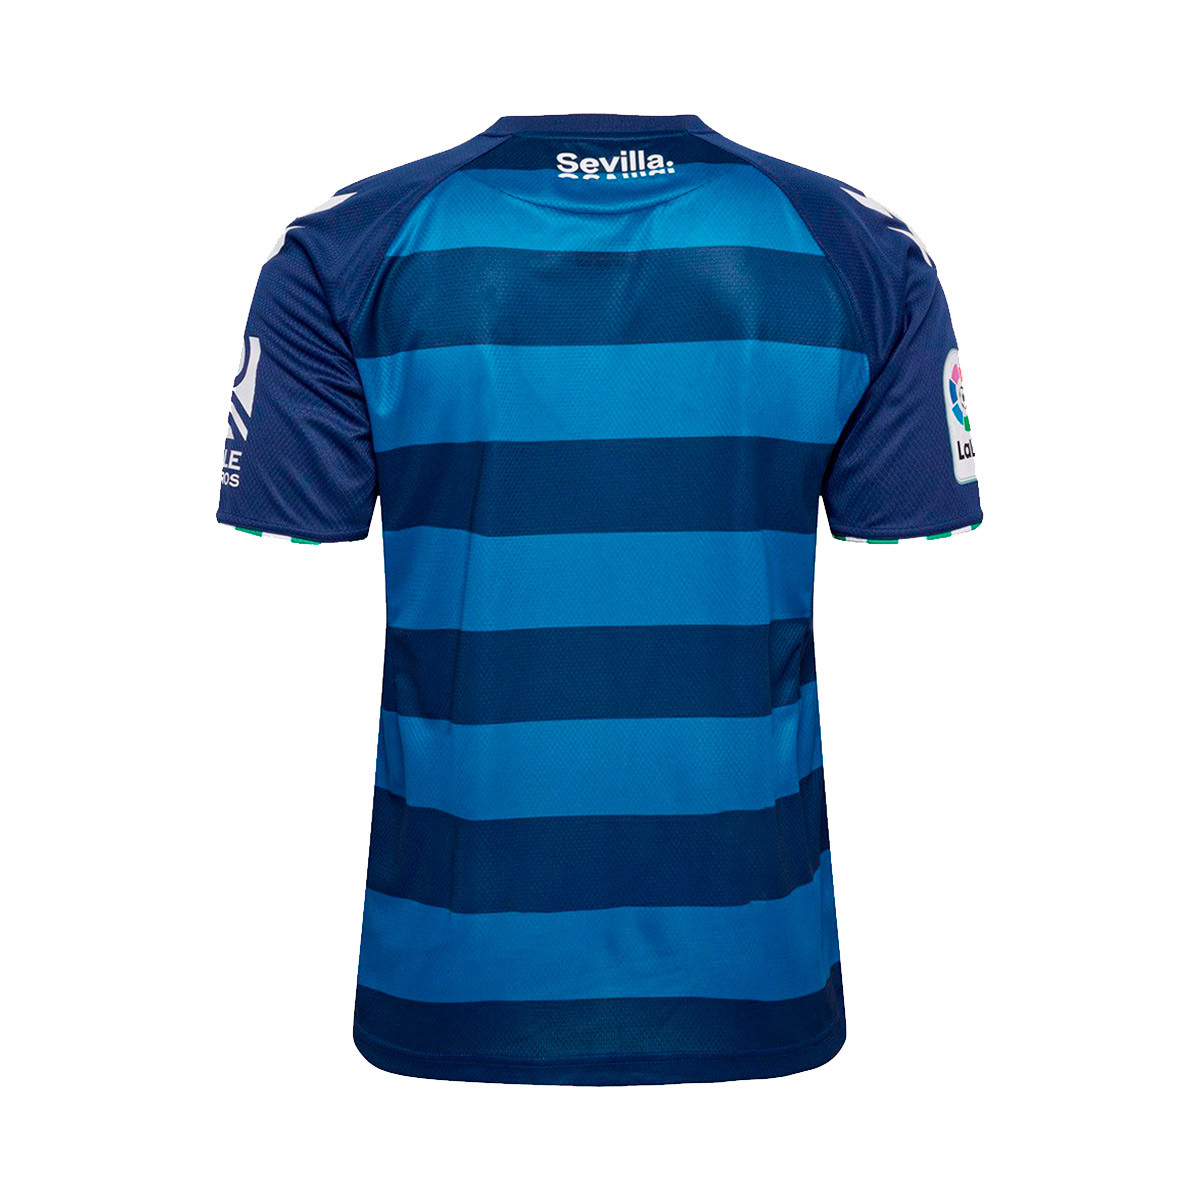 Kroatien Fan T-Shirt Fußball Retro Shirt Trikot Blau Unisex S M L XL XXL XXXL 